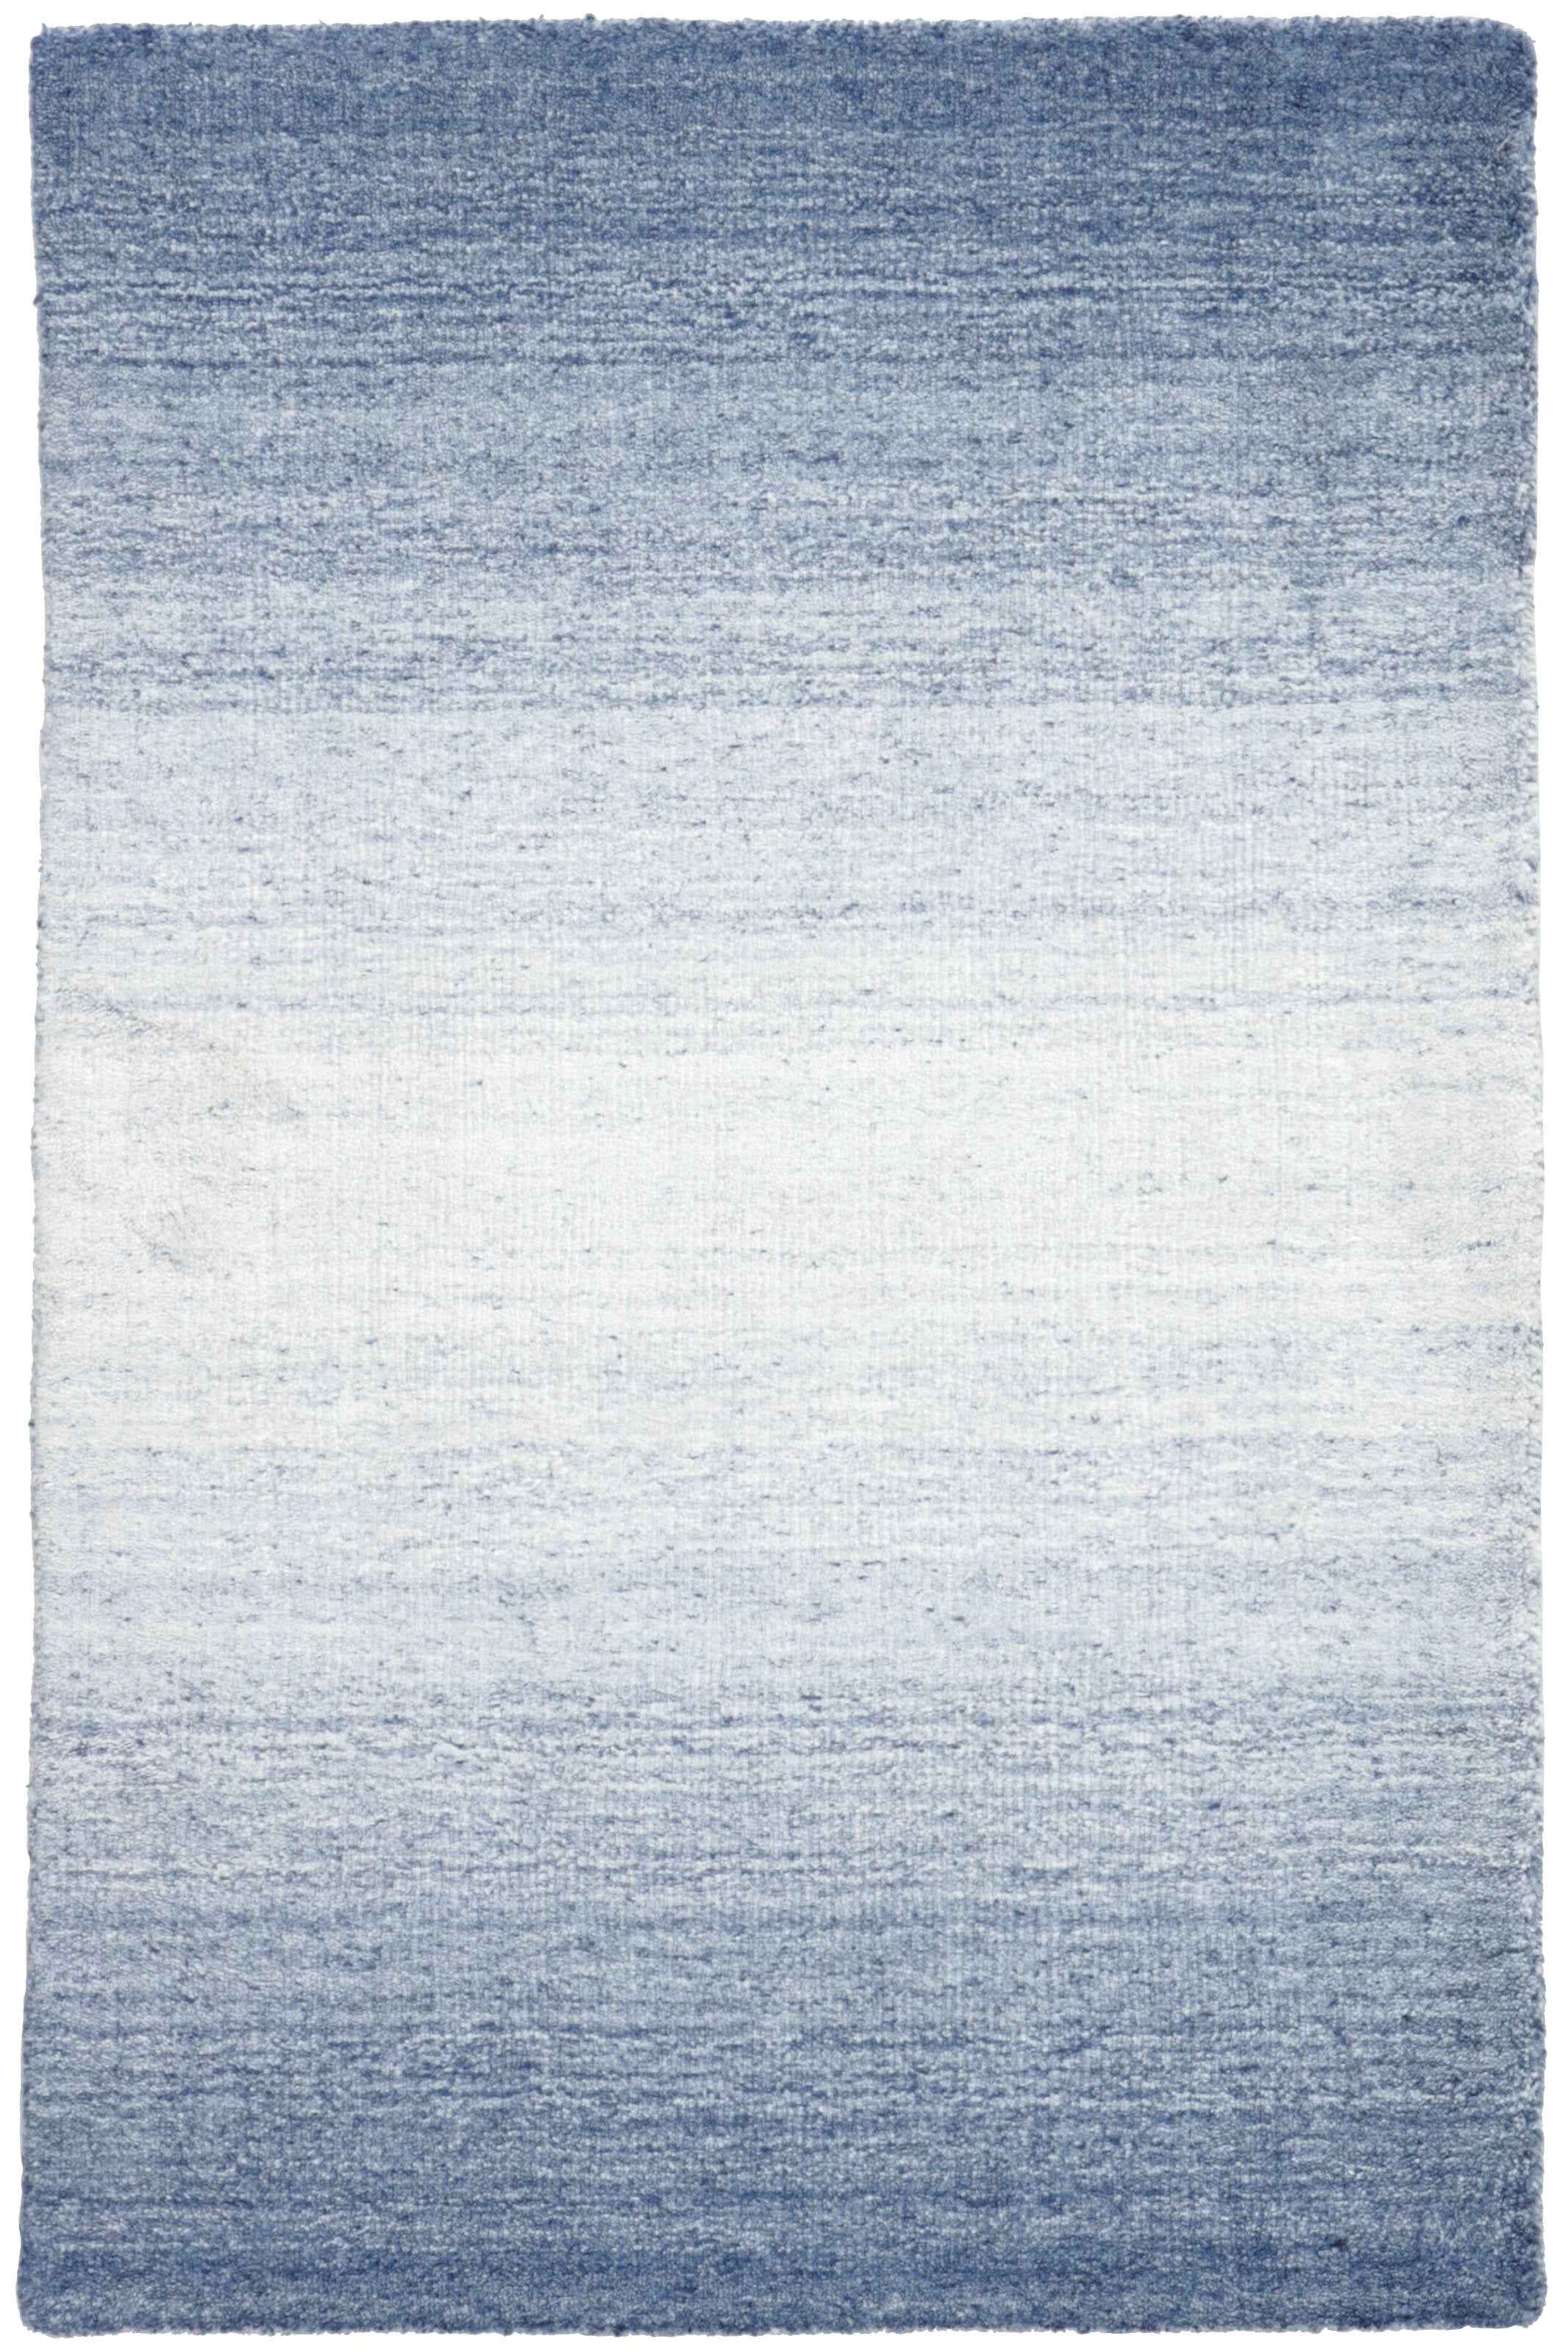 300x200 cm  Indian Wool/Viscose Blue Rug-Blau, Blue